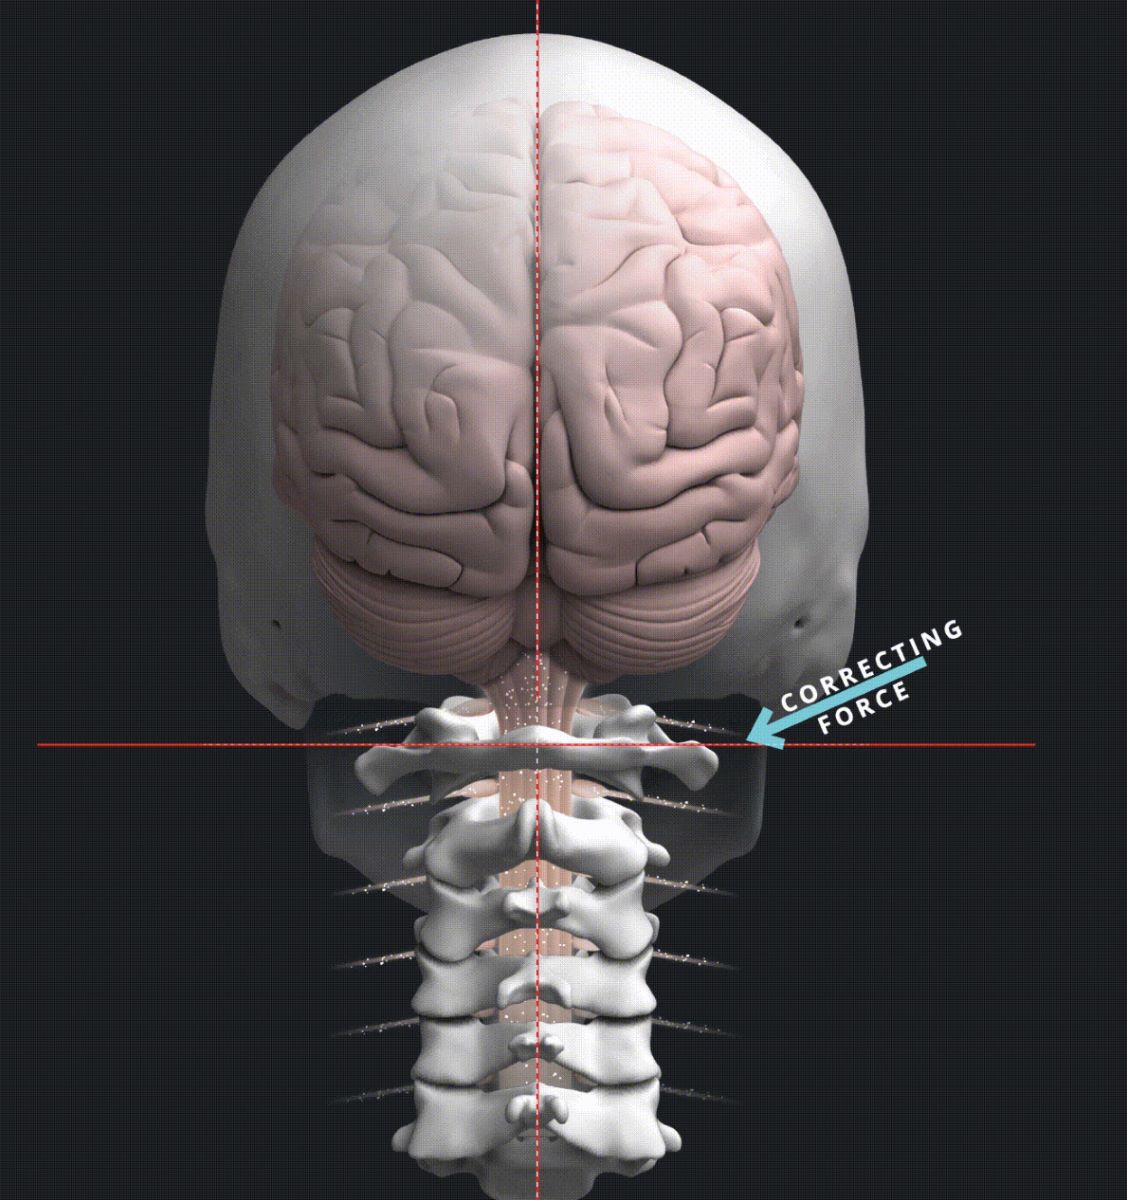 Dr Ryan Klopfer patient education corrective force 3D image